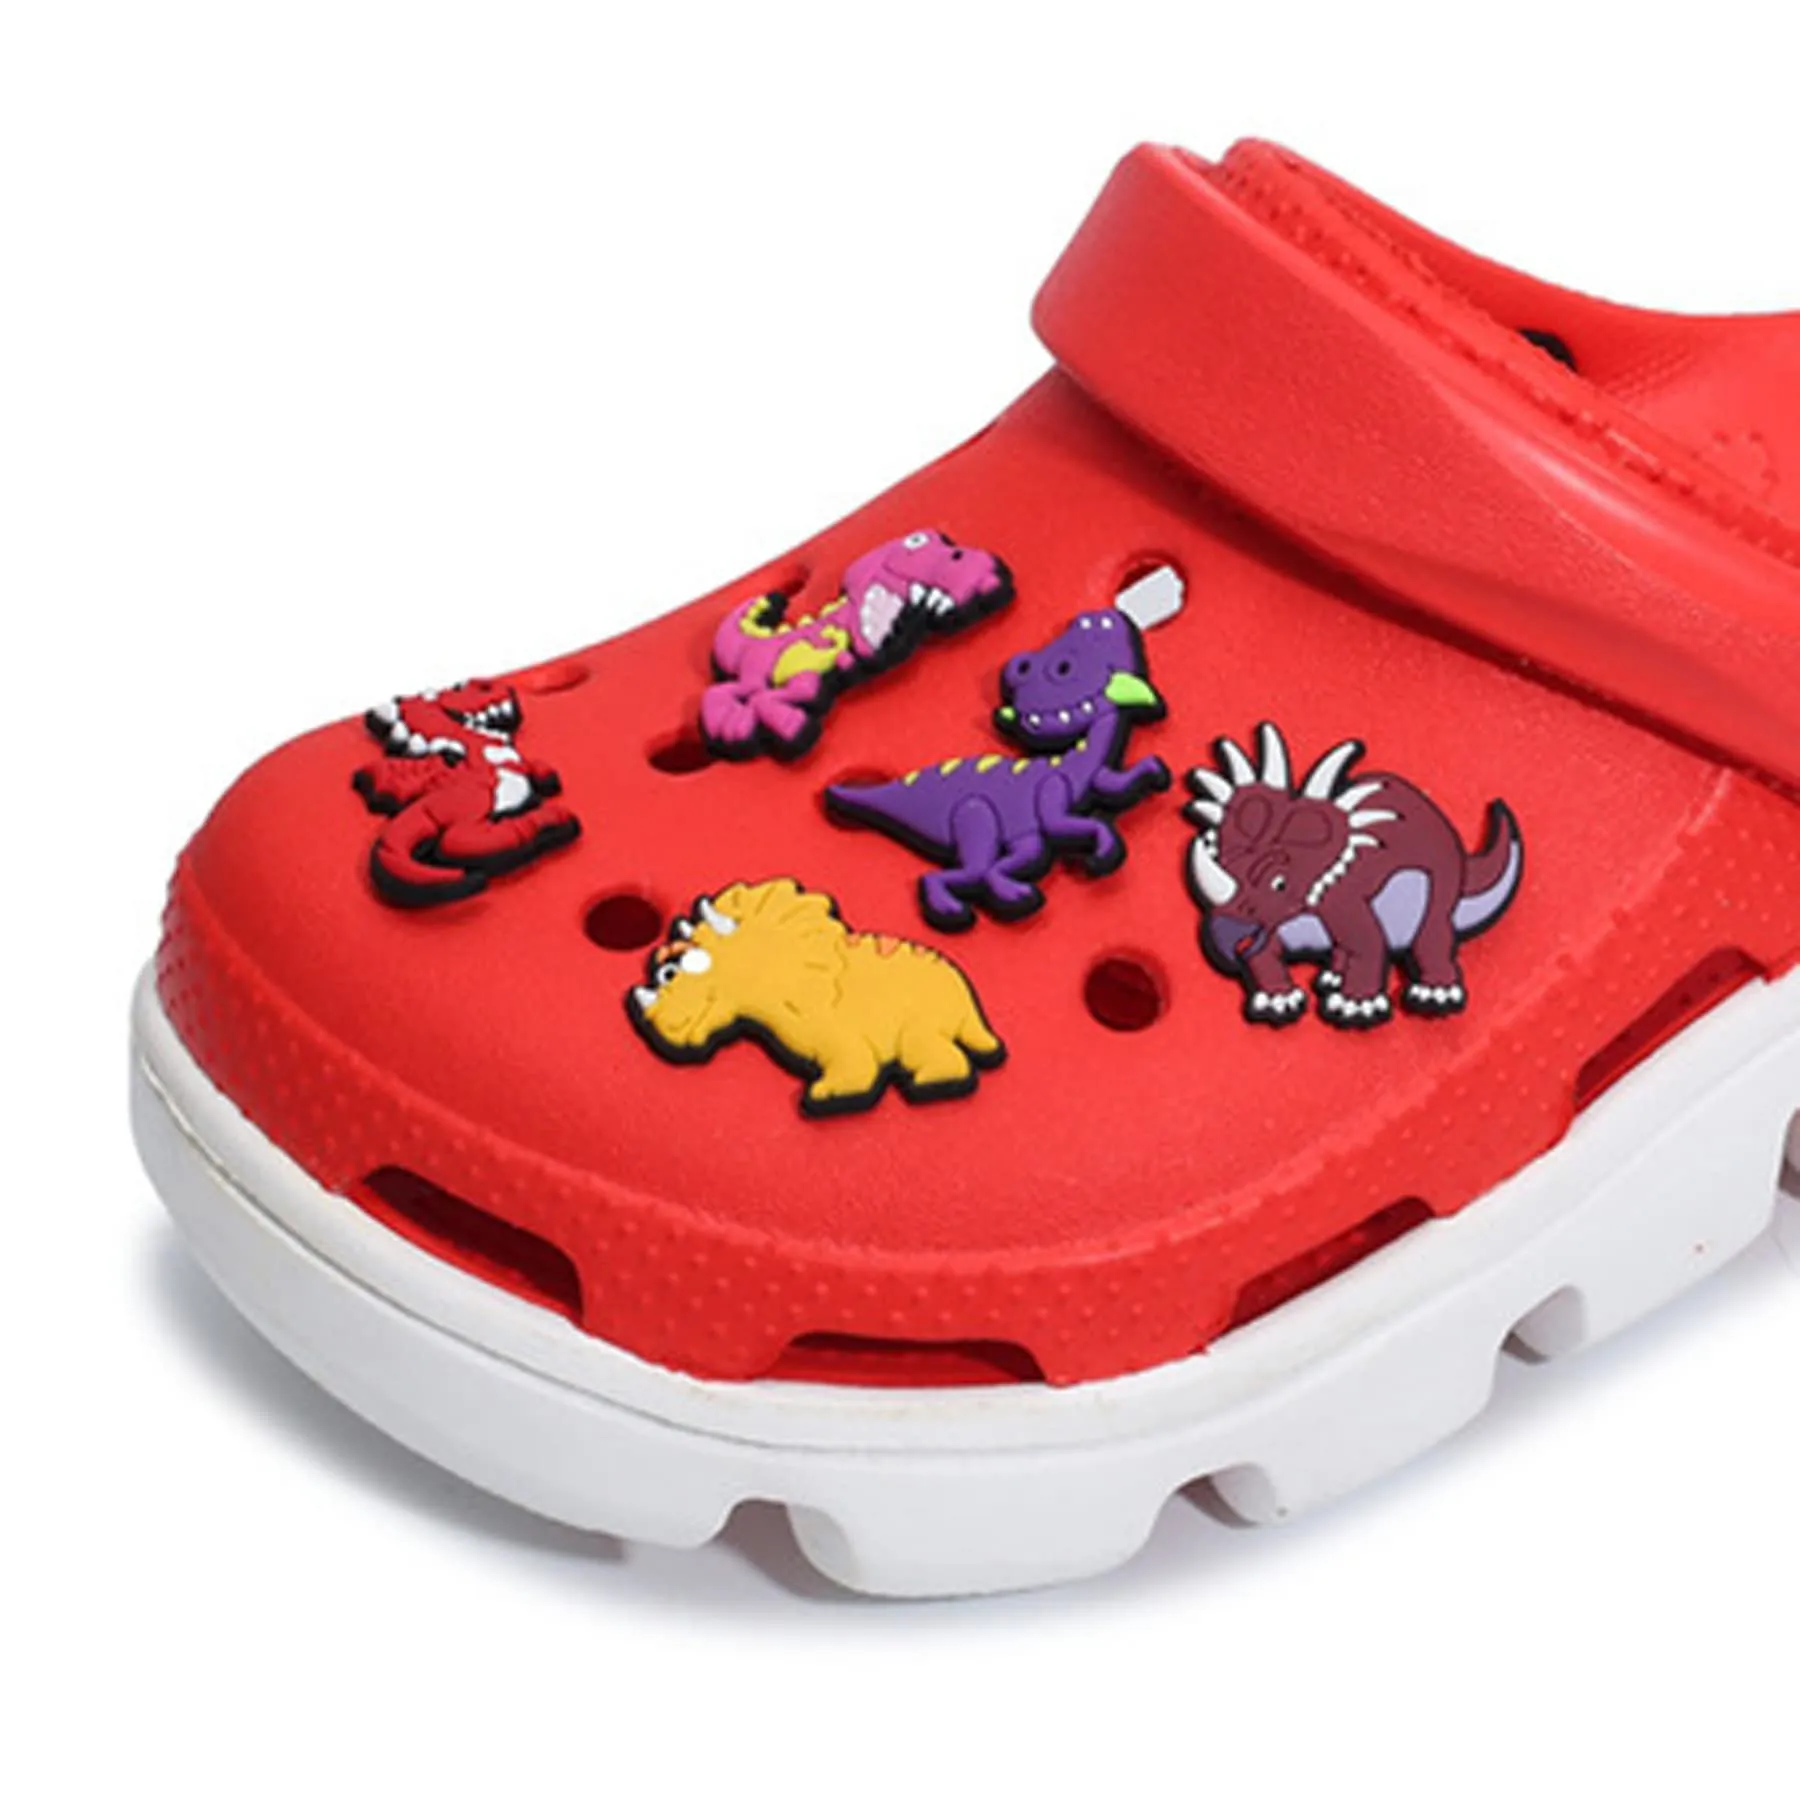 shoe charms suitable for croc sandals wristbands men women party children reward christmas gift banknote dinosaur space alien